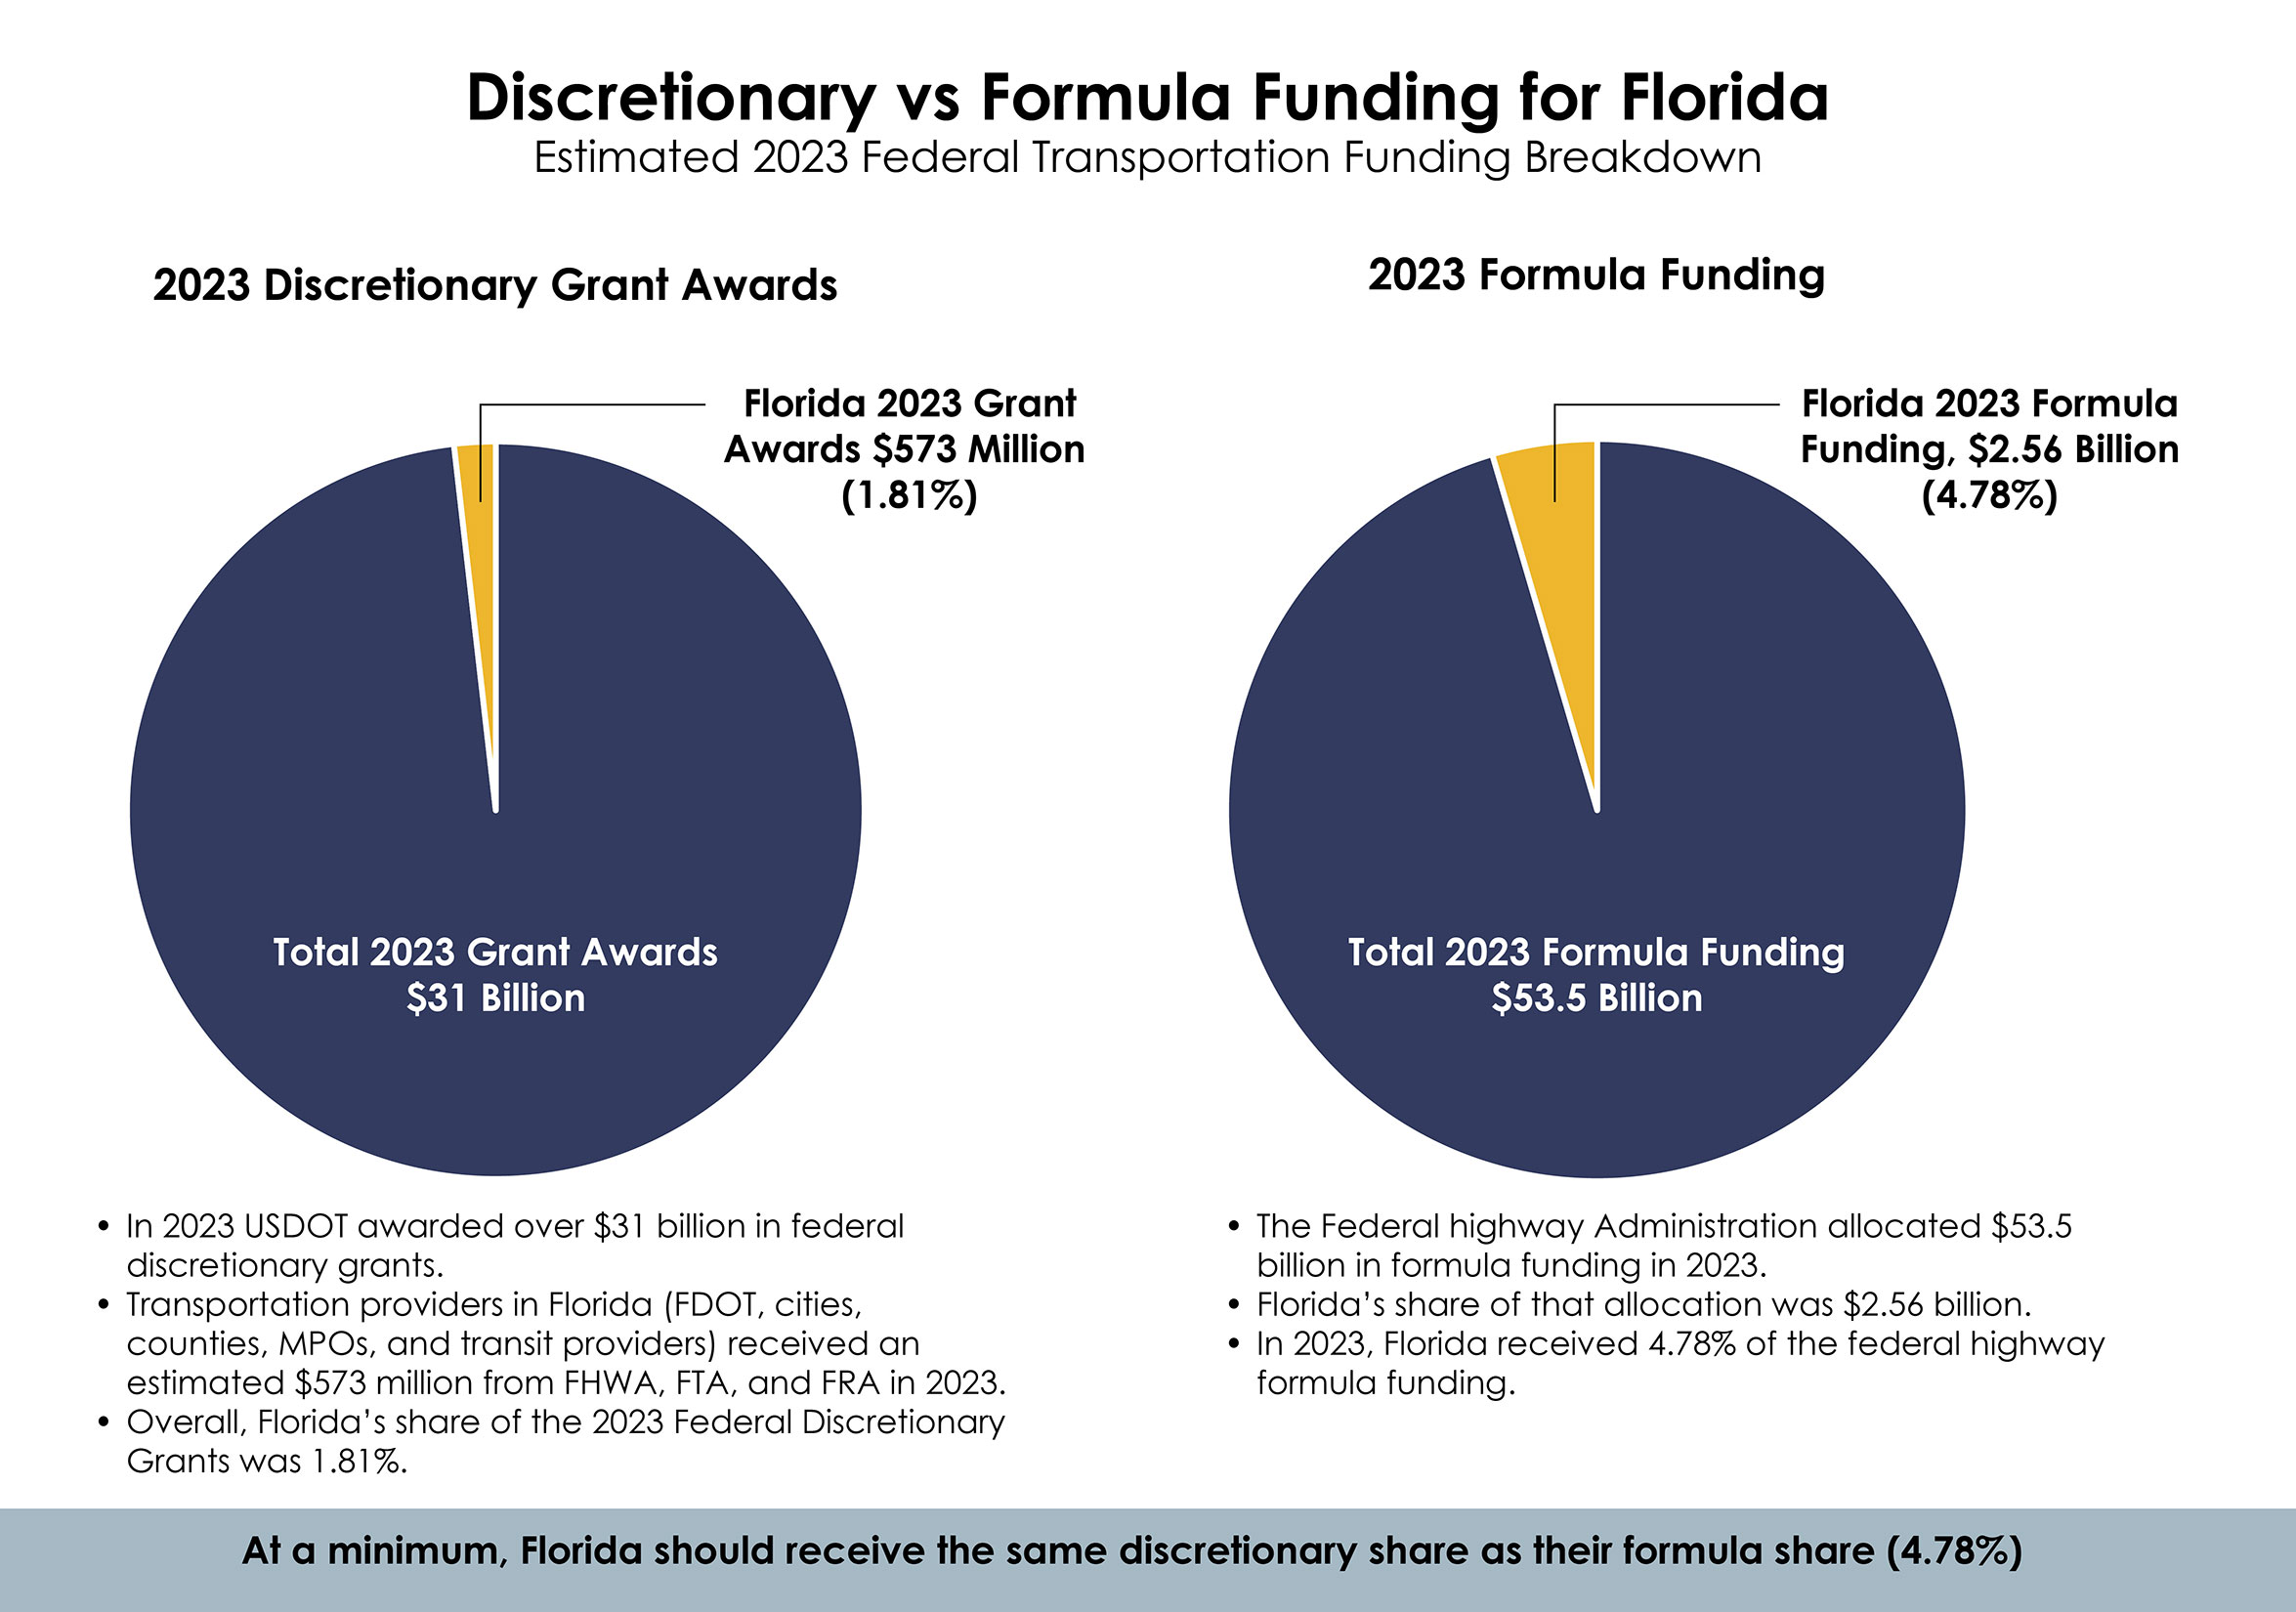 Discretionary vs. Formula Funding for Florida